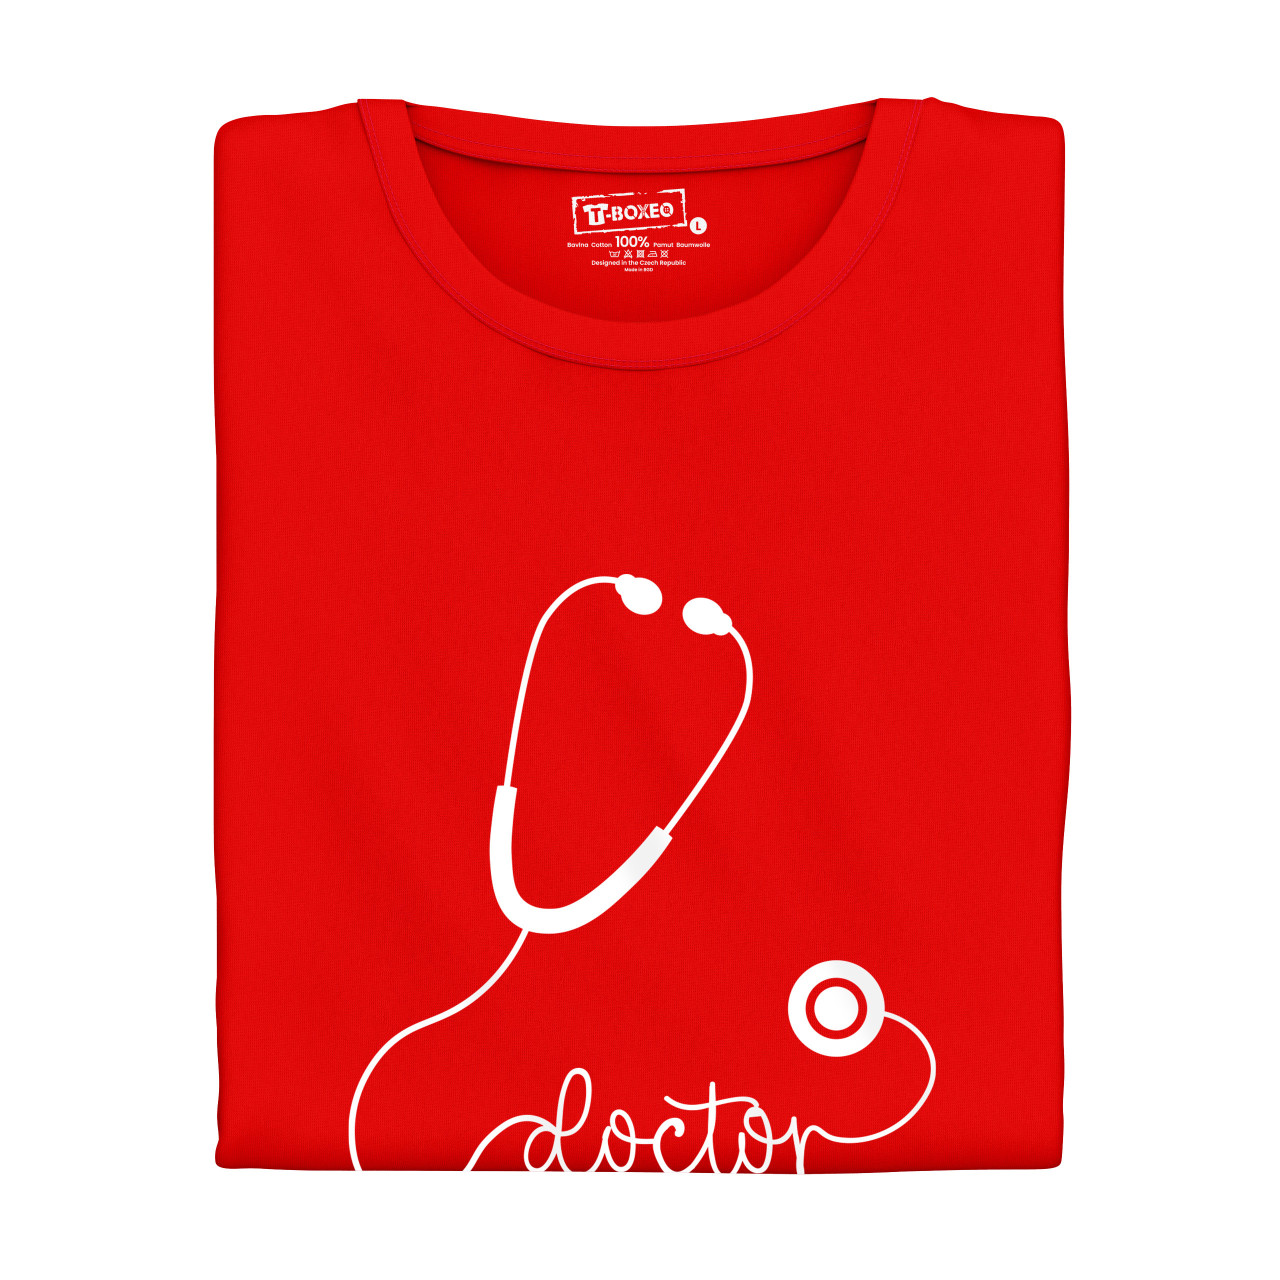 Pánské tričko s potiskem "Doctor - stetoskop"